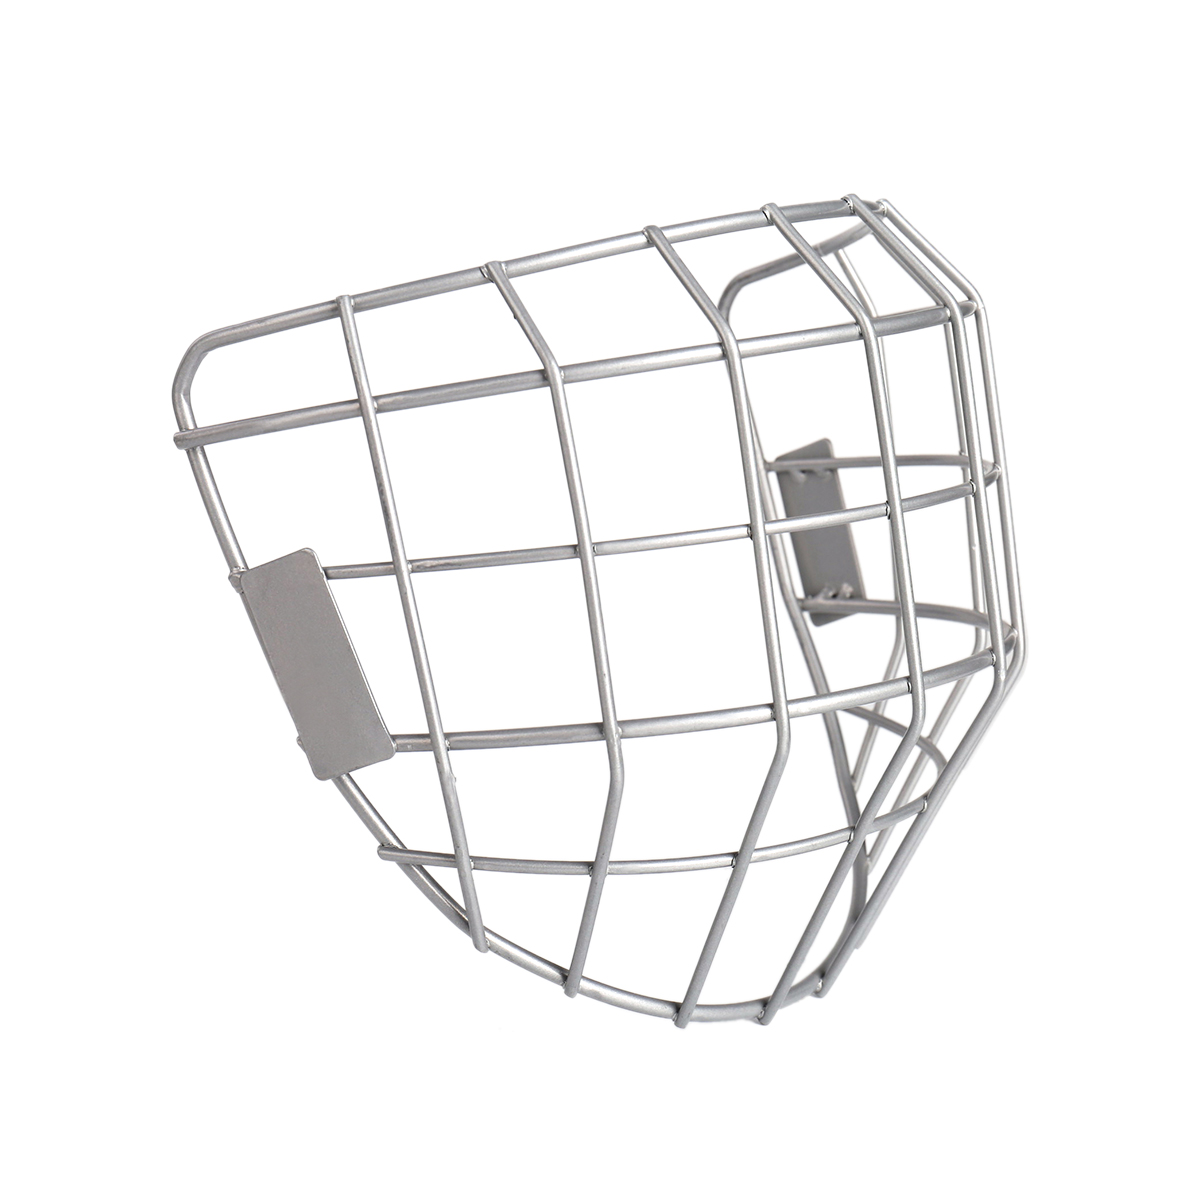 Eishockeykäfig mit silbernem Helm und Gesichtsschutz